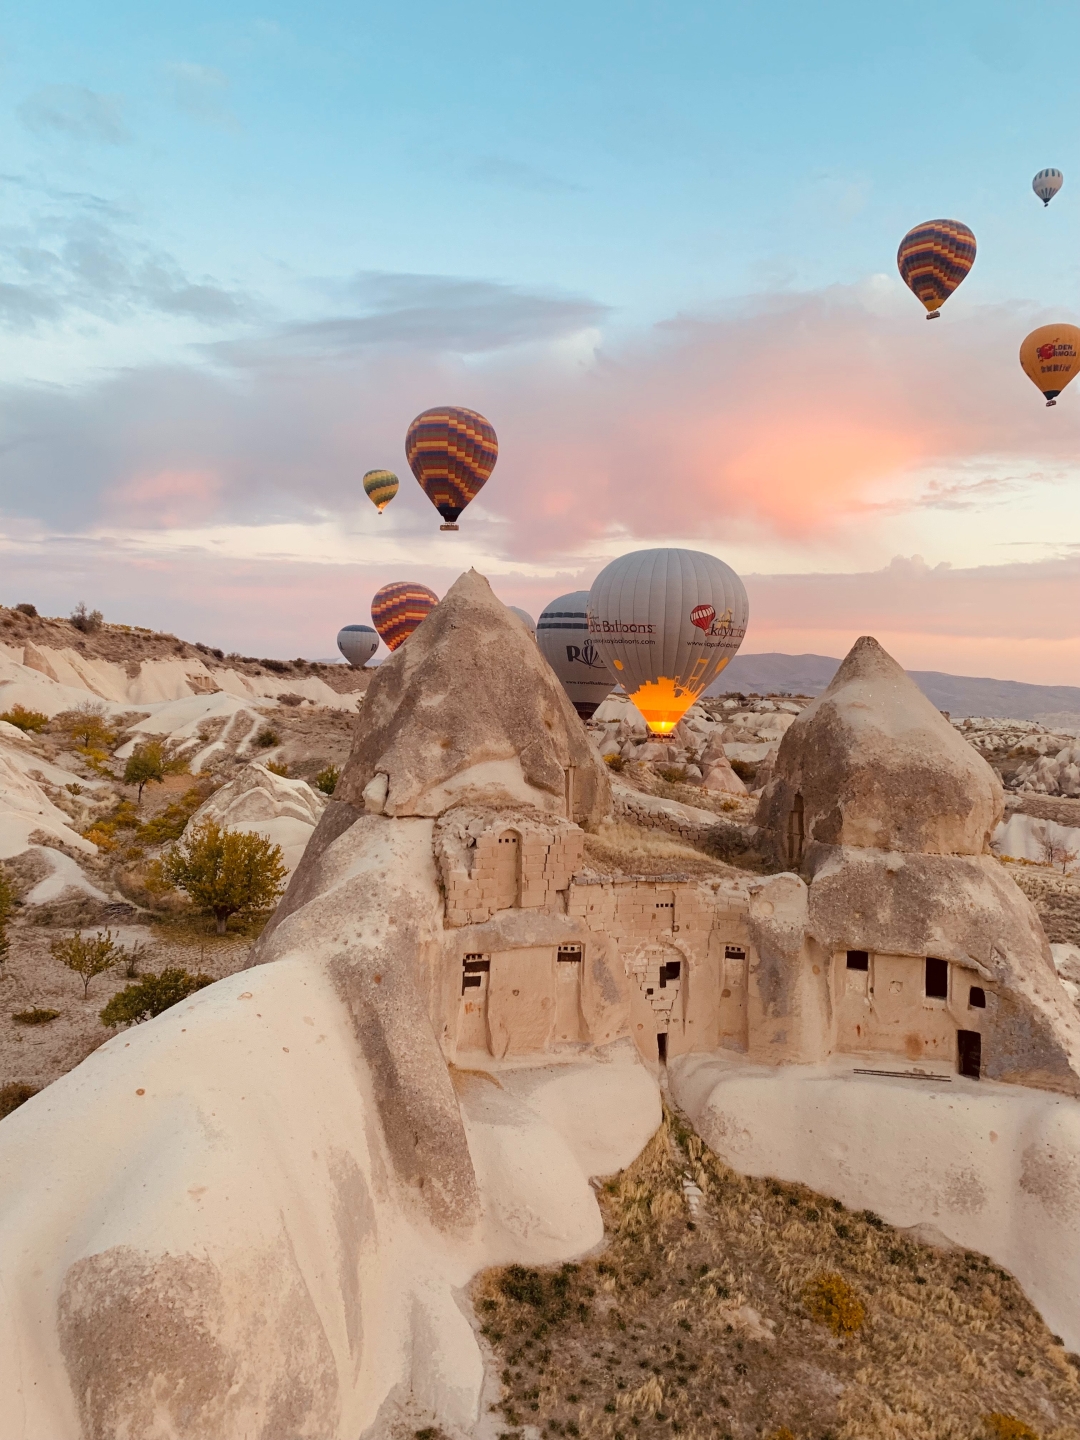 I Hrvatska je na popisu: Najljepše destinacije za let balonom